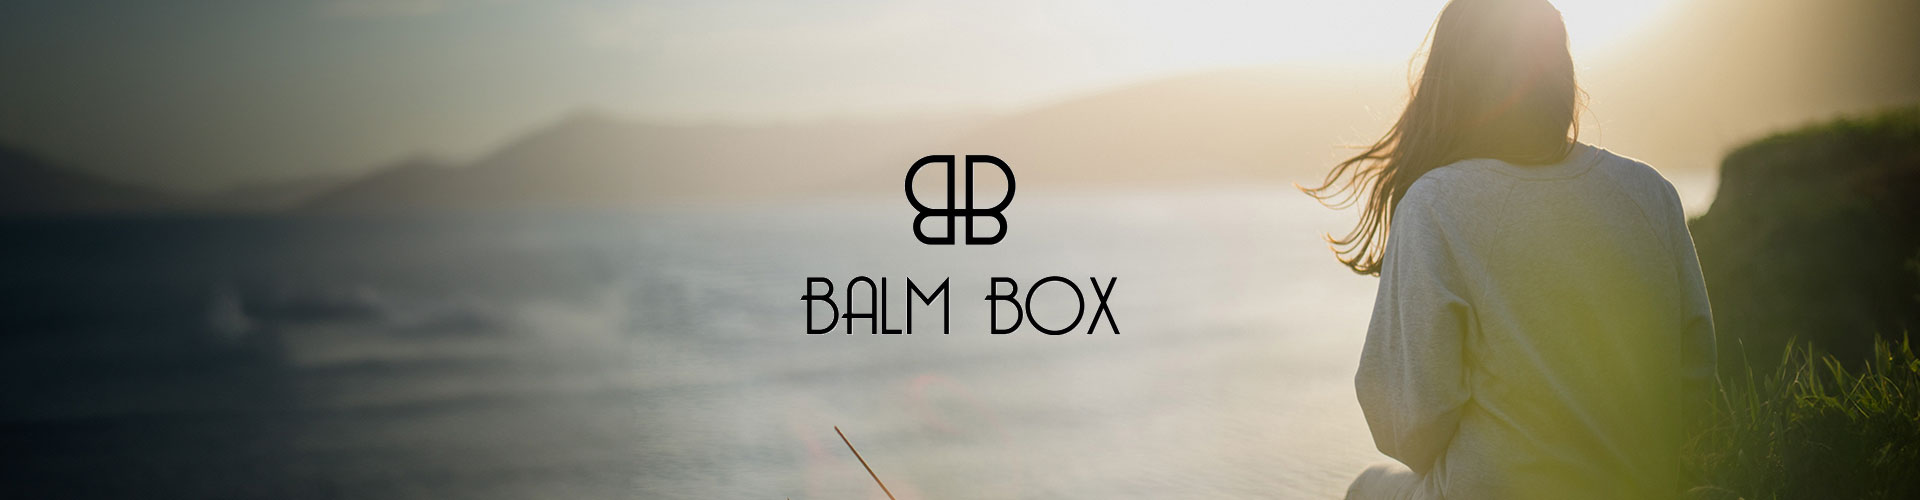 Case Study - Balm Box